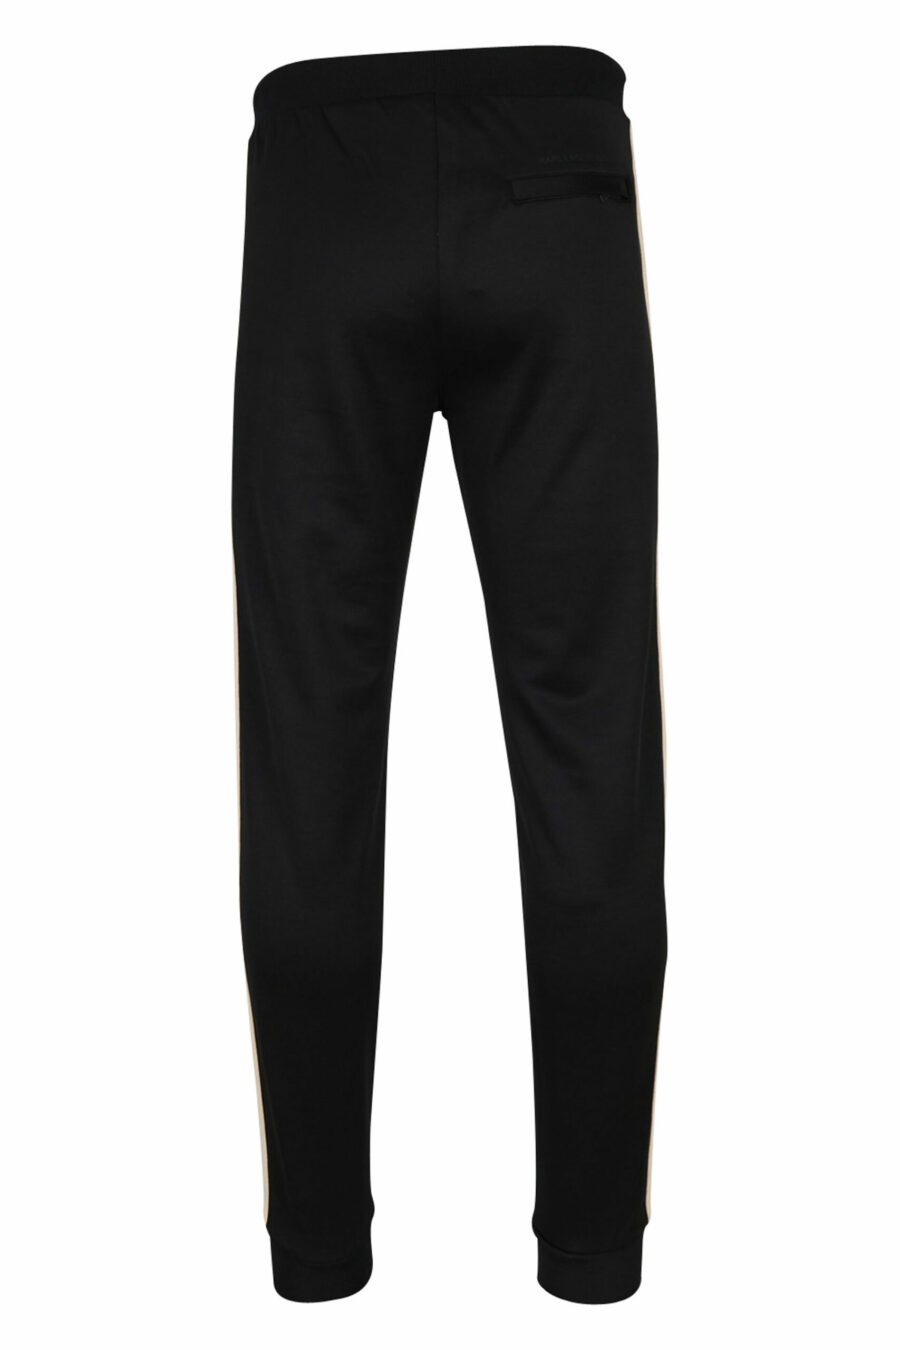 Pantalón negro con minilogo y franjas beige laterales - 4062226395175 2 scaled